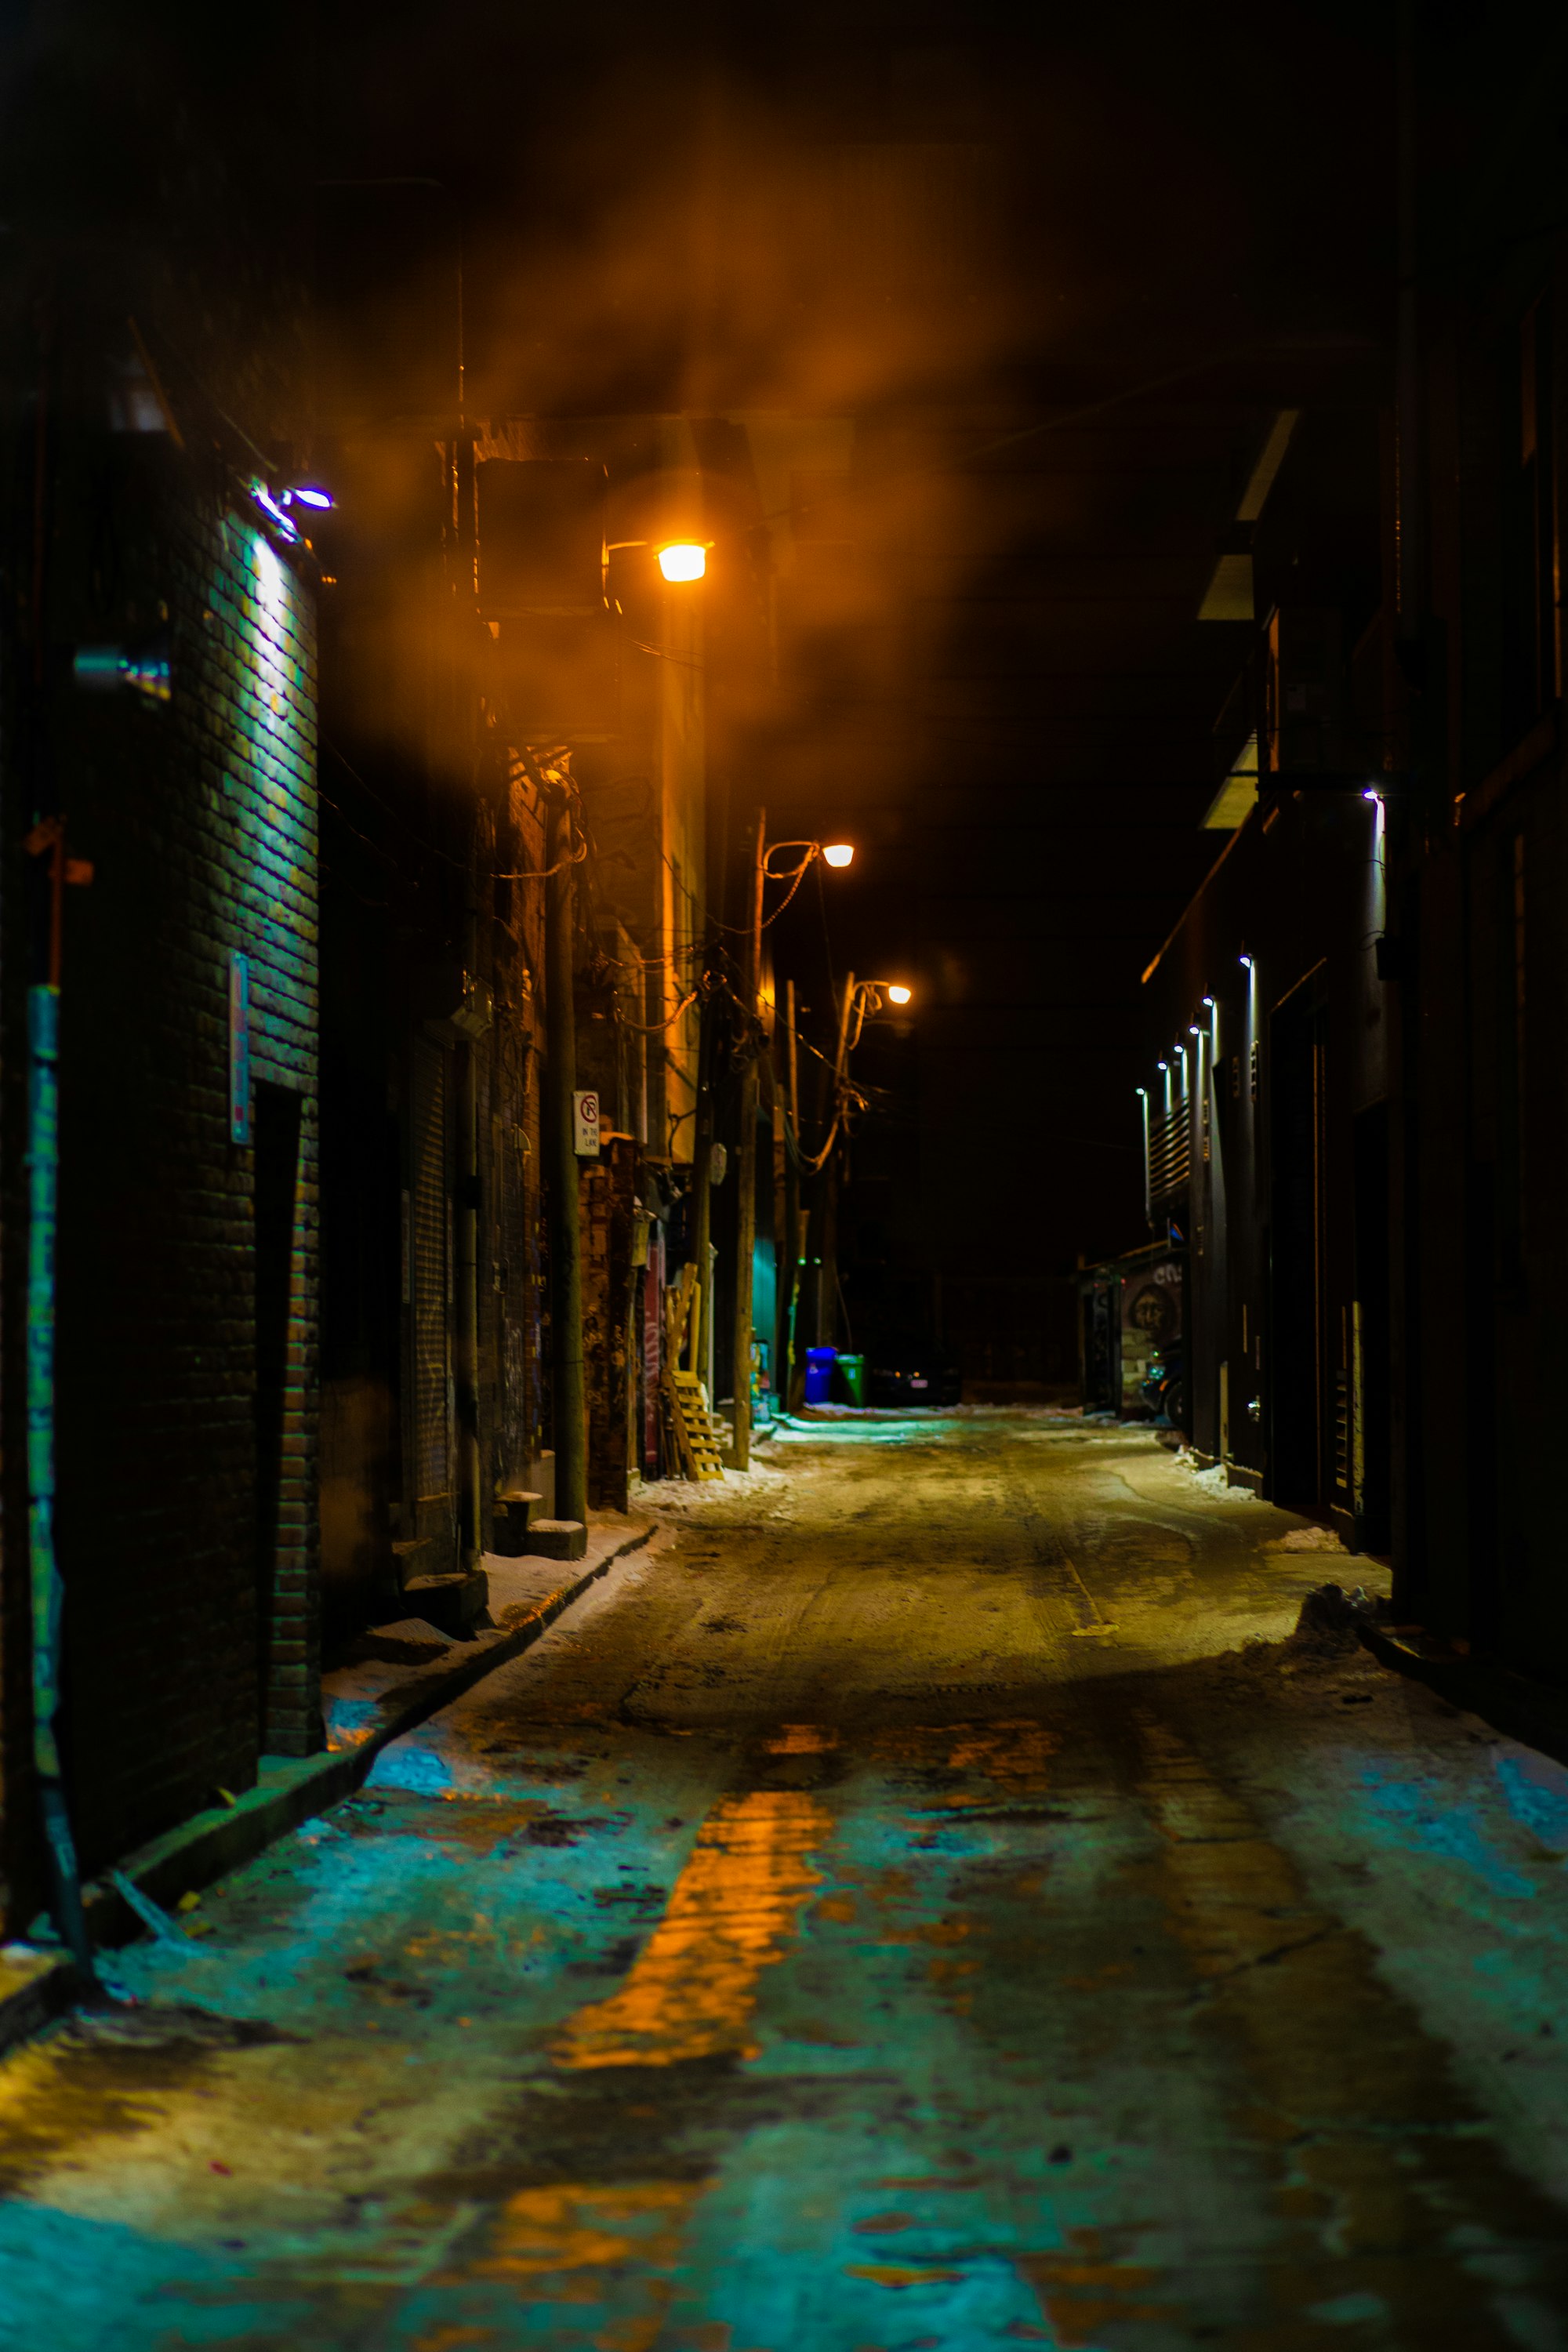 Dark Alley - A Short Story